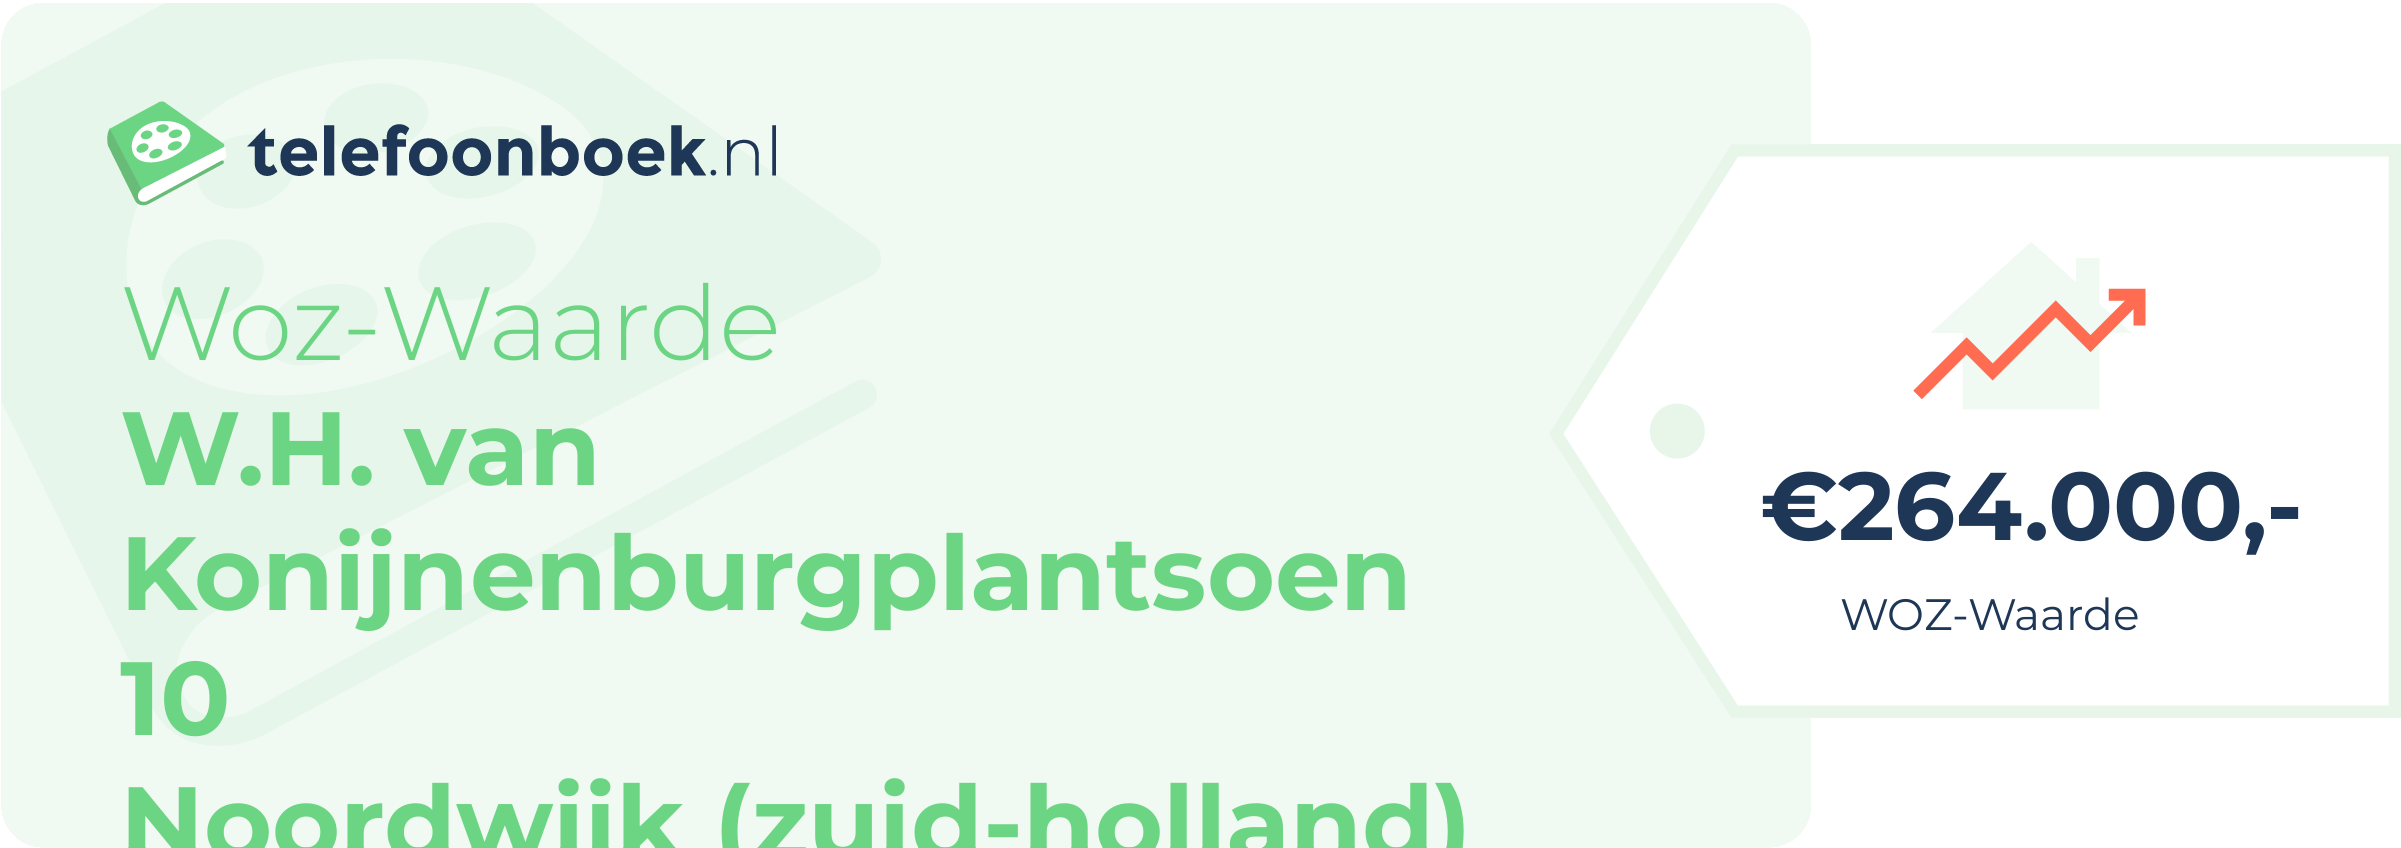 WOZ-waarde W.H. Van Konijnenburgplantsoen 10 Noordwijk (Zuid-Holland)